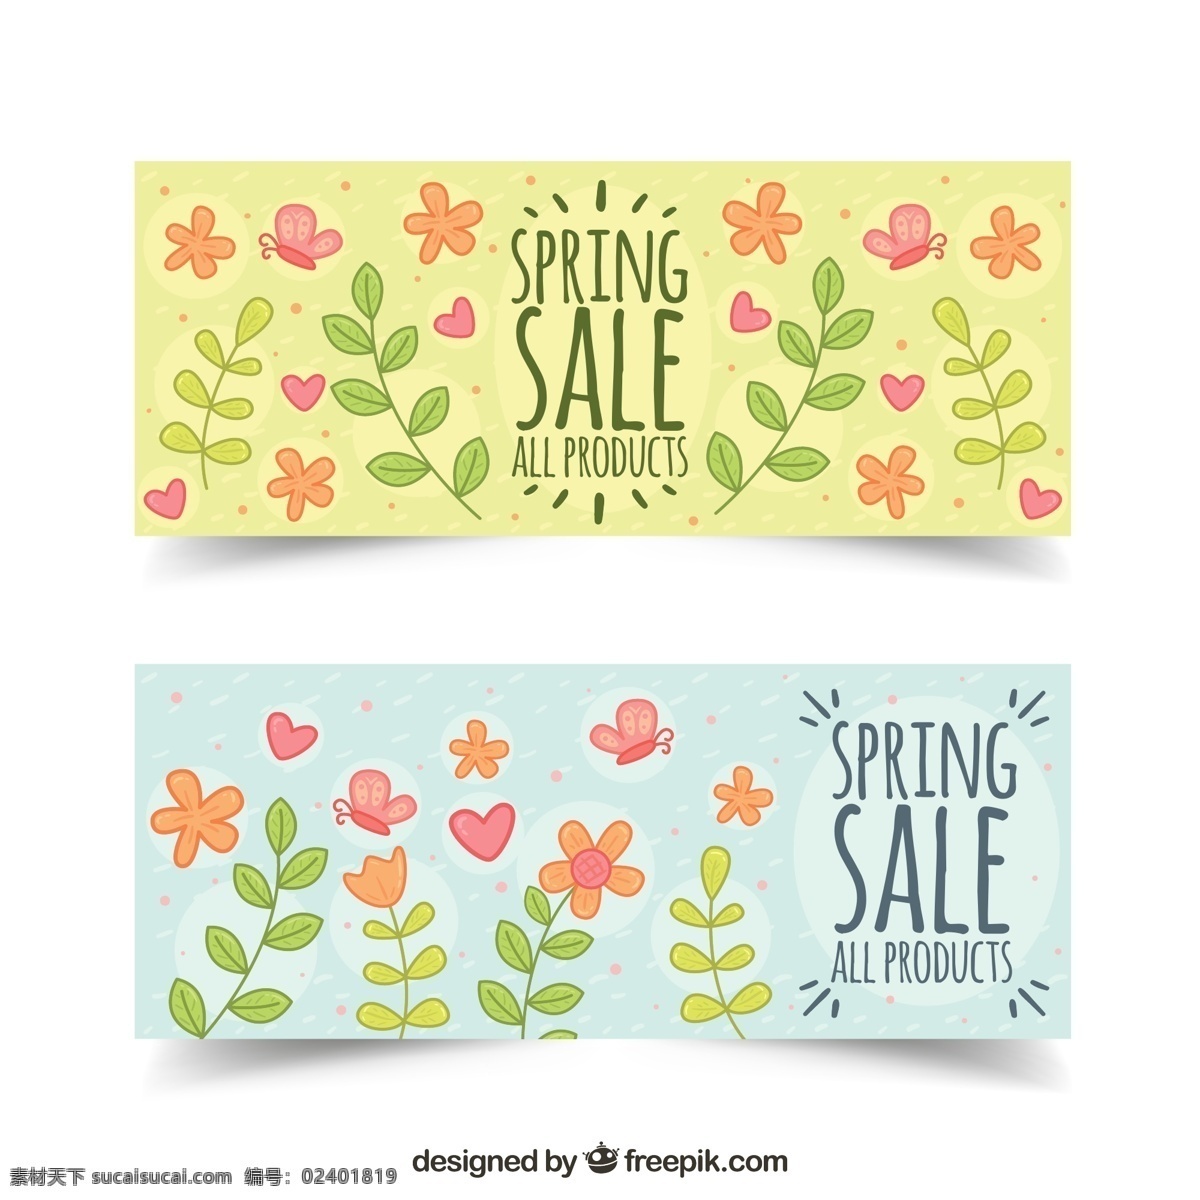 彩色 花卉 春季 促销 蝴蝶 爱心 广告海报设计 招贴设计